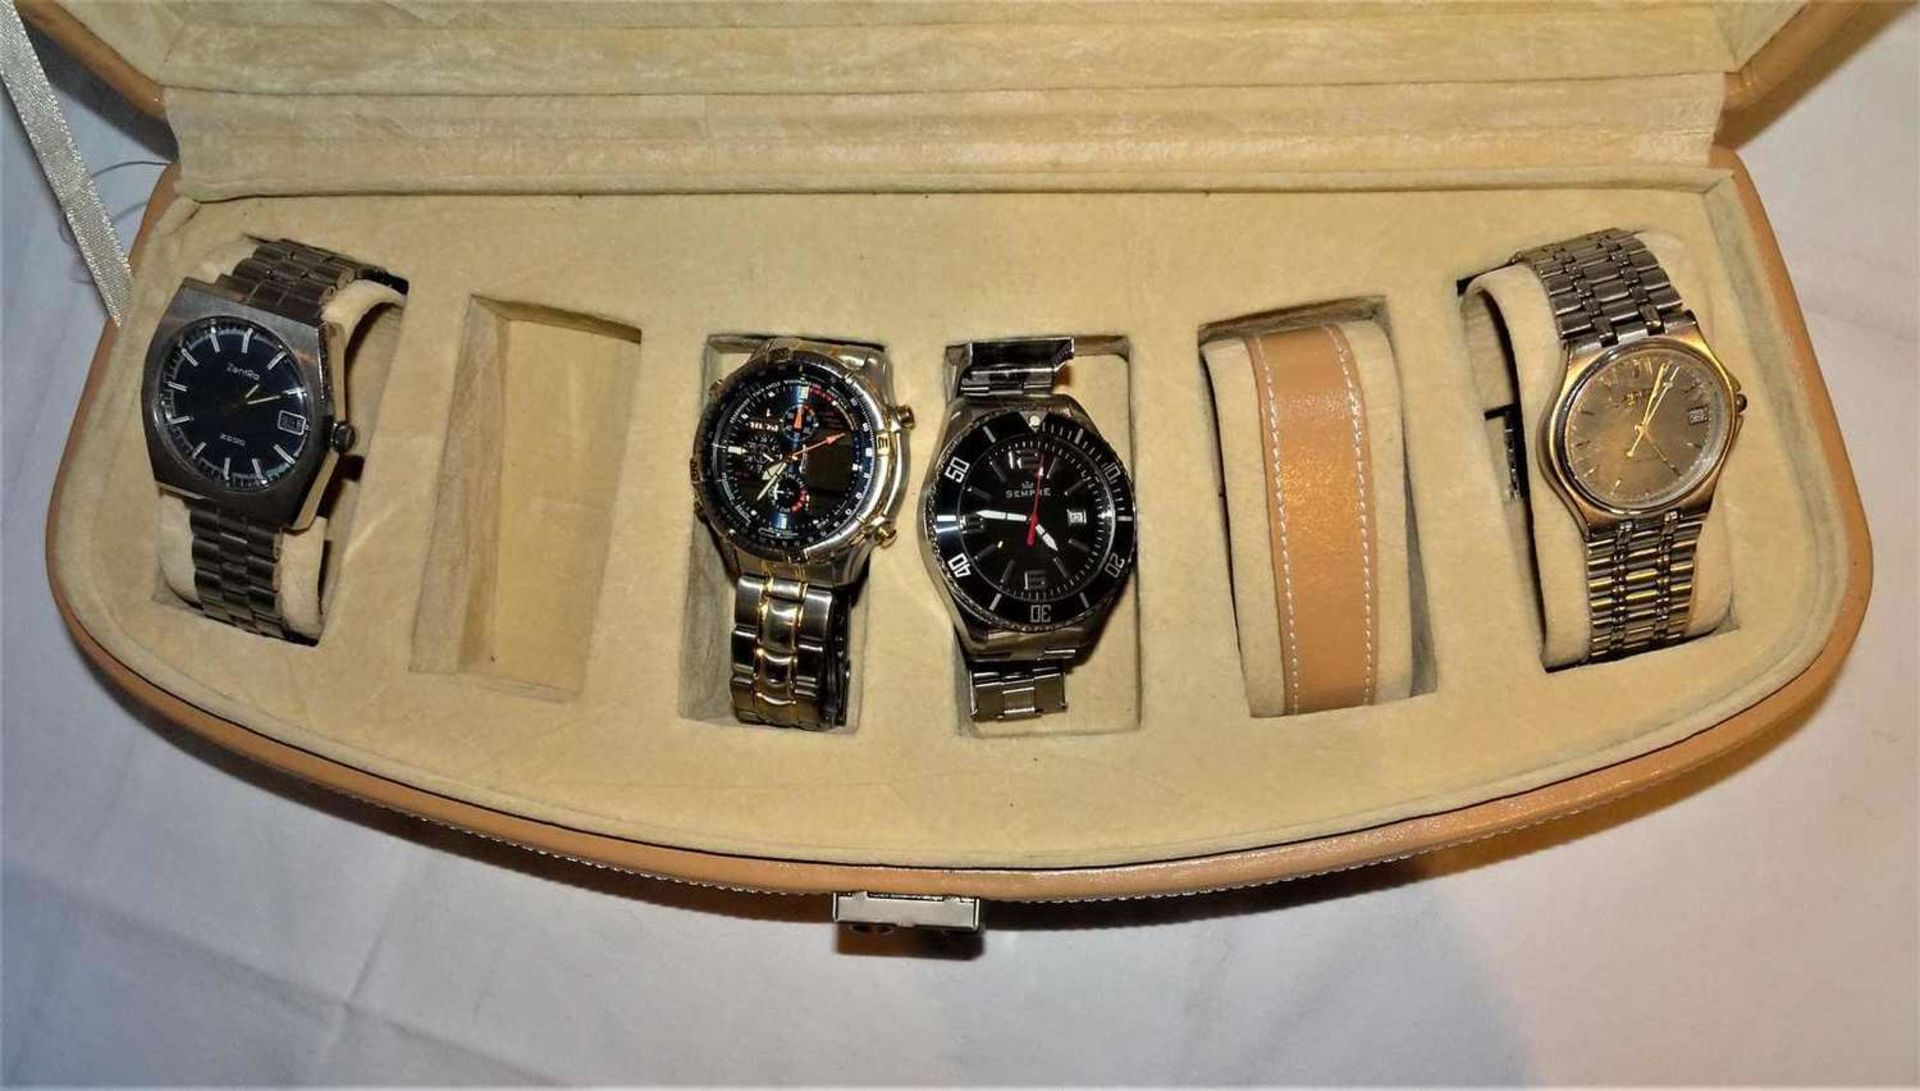 1 Uhrenbox, Inhalt mit 4 Herrenarmbanduhren, dabei eine Zentra 2000 / 1 Citizen Chrono / 1 Sempre, - Image 2 of 3